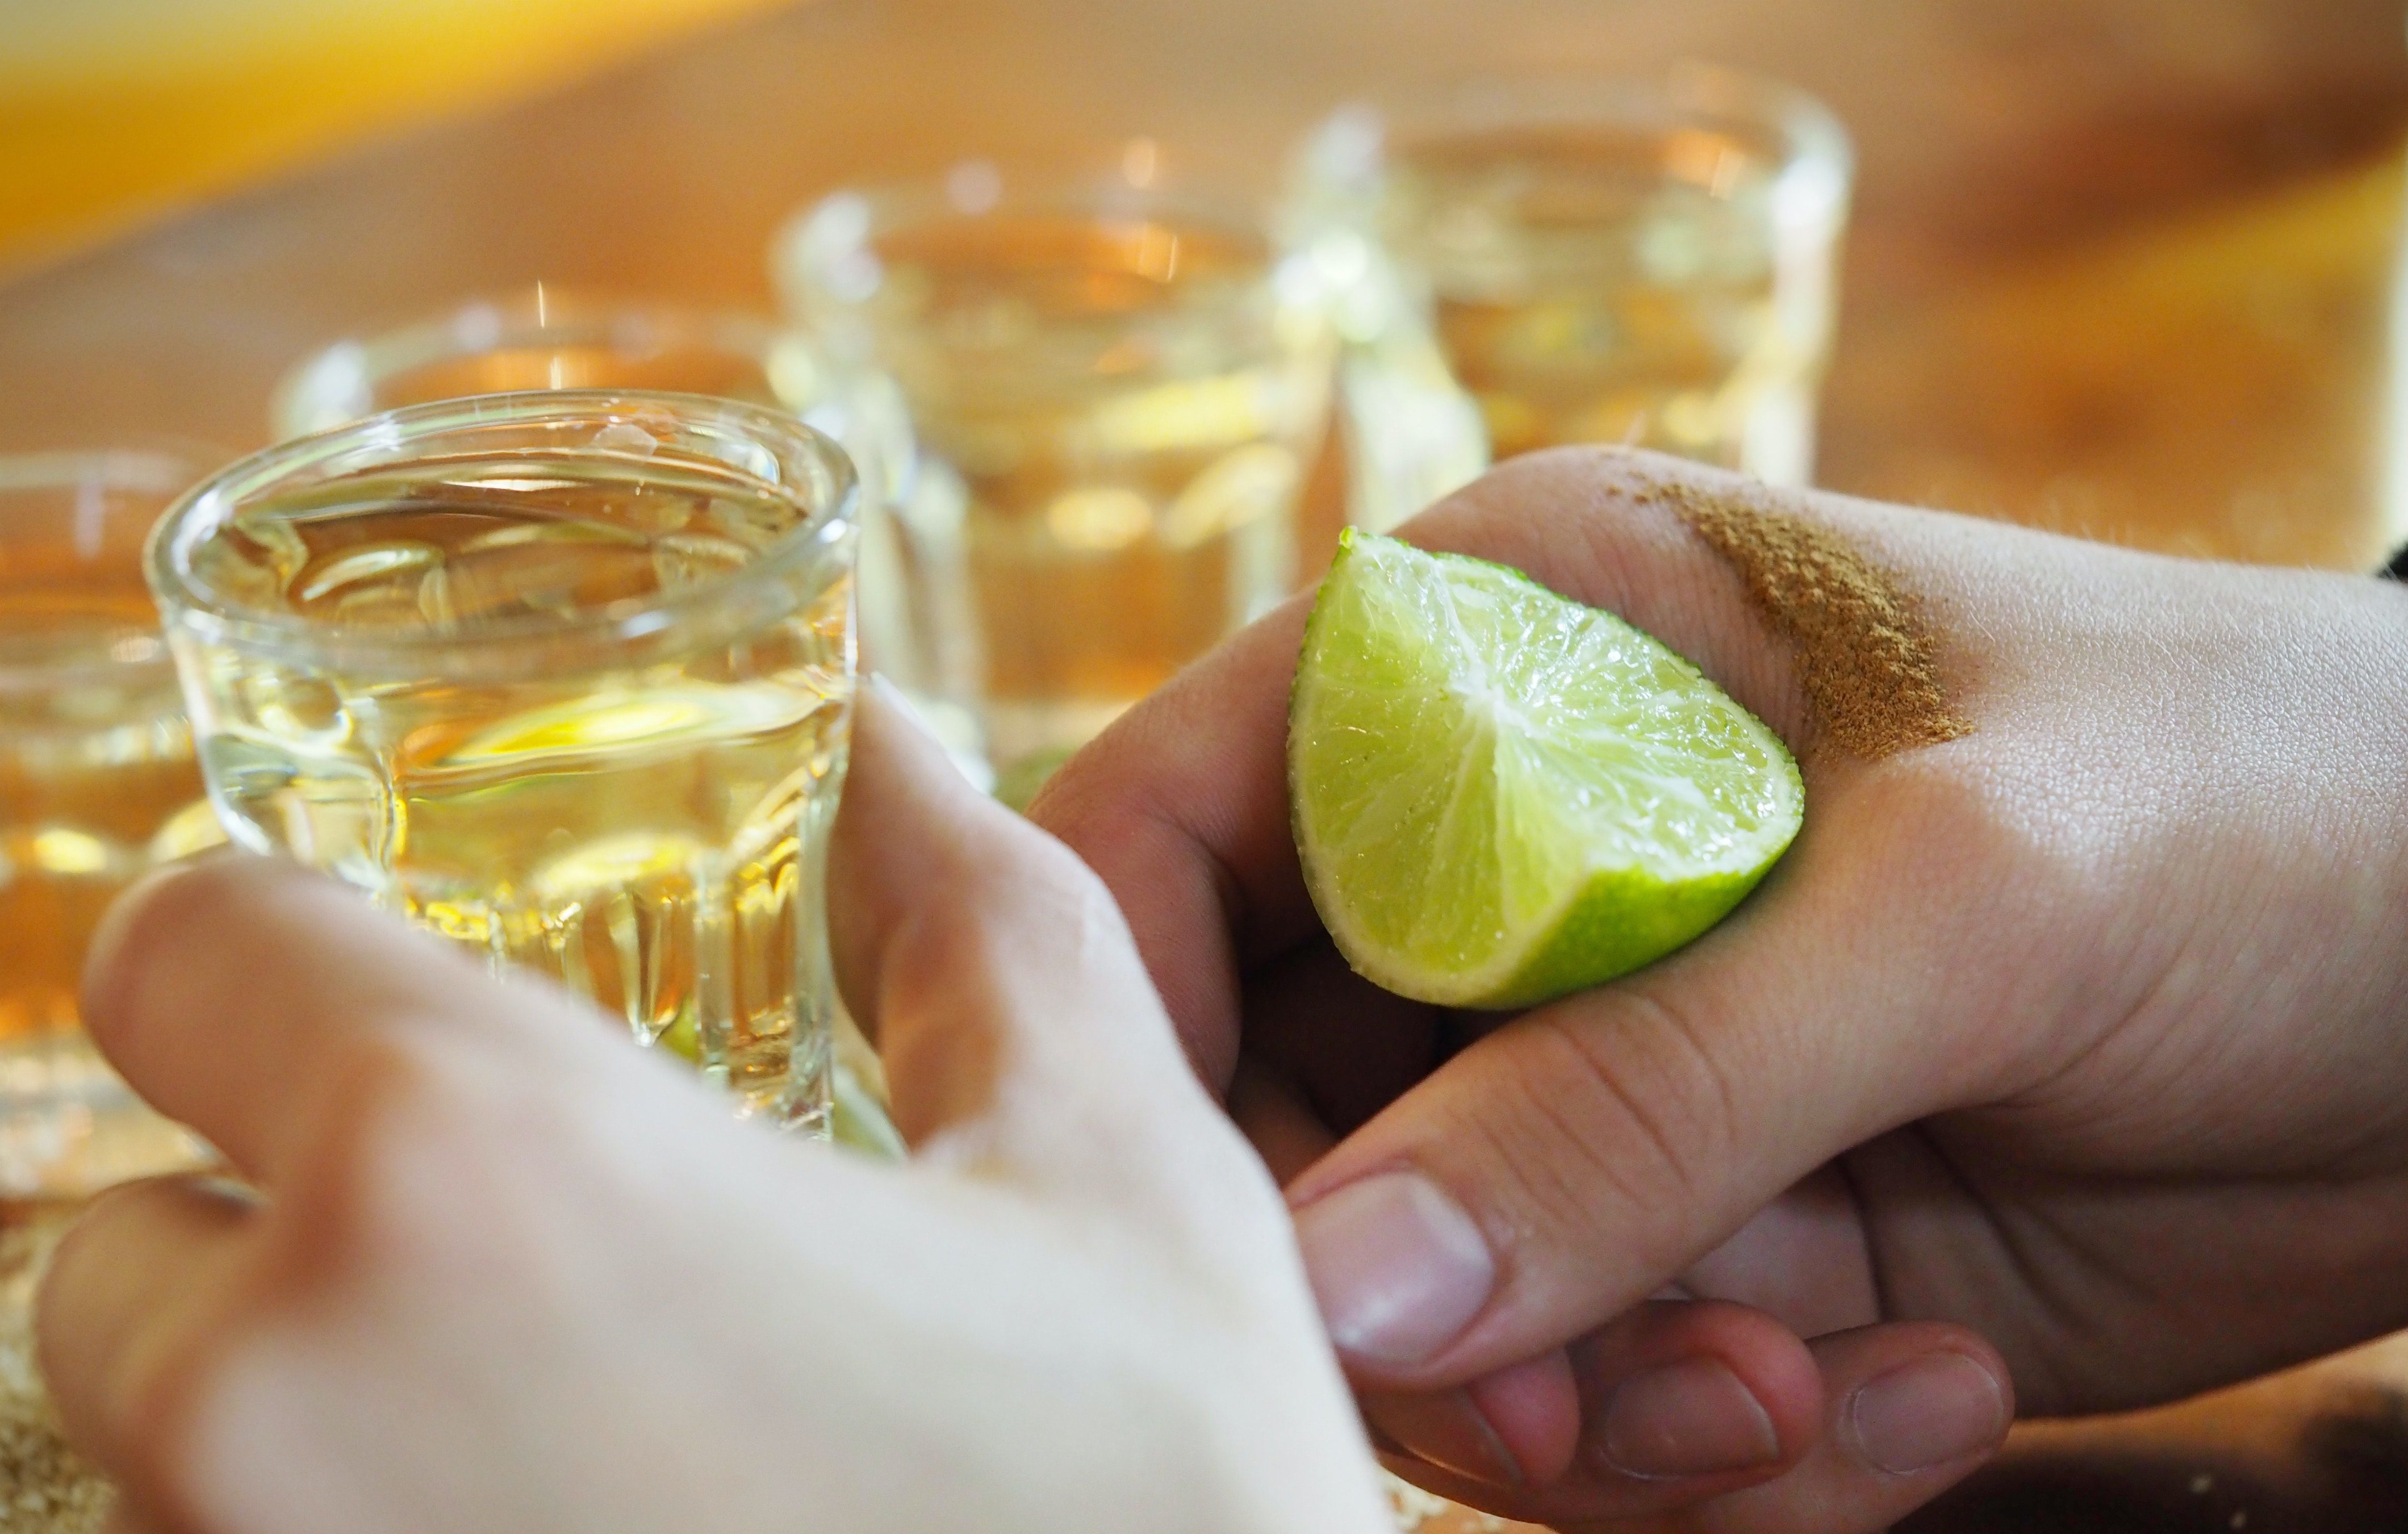 México nos ofrece diversas bebidas para celebrar su independencia. (Foto: Pexel)